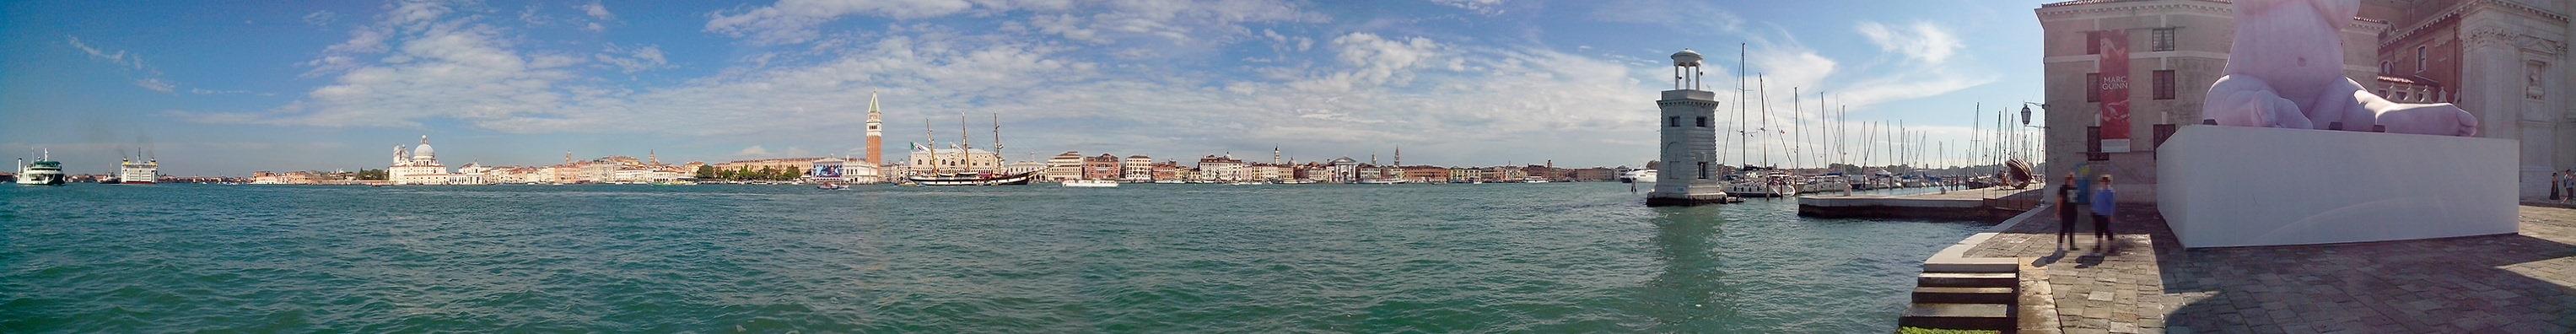 Schönes Panorama der Promenade von Venedig.